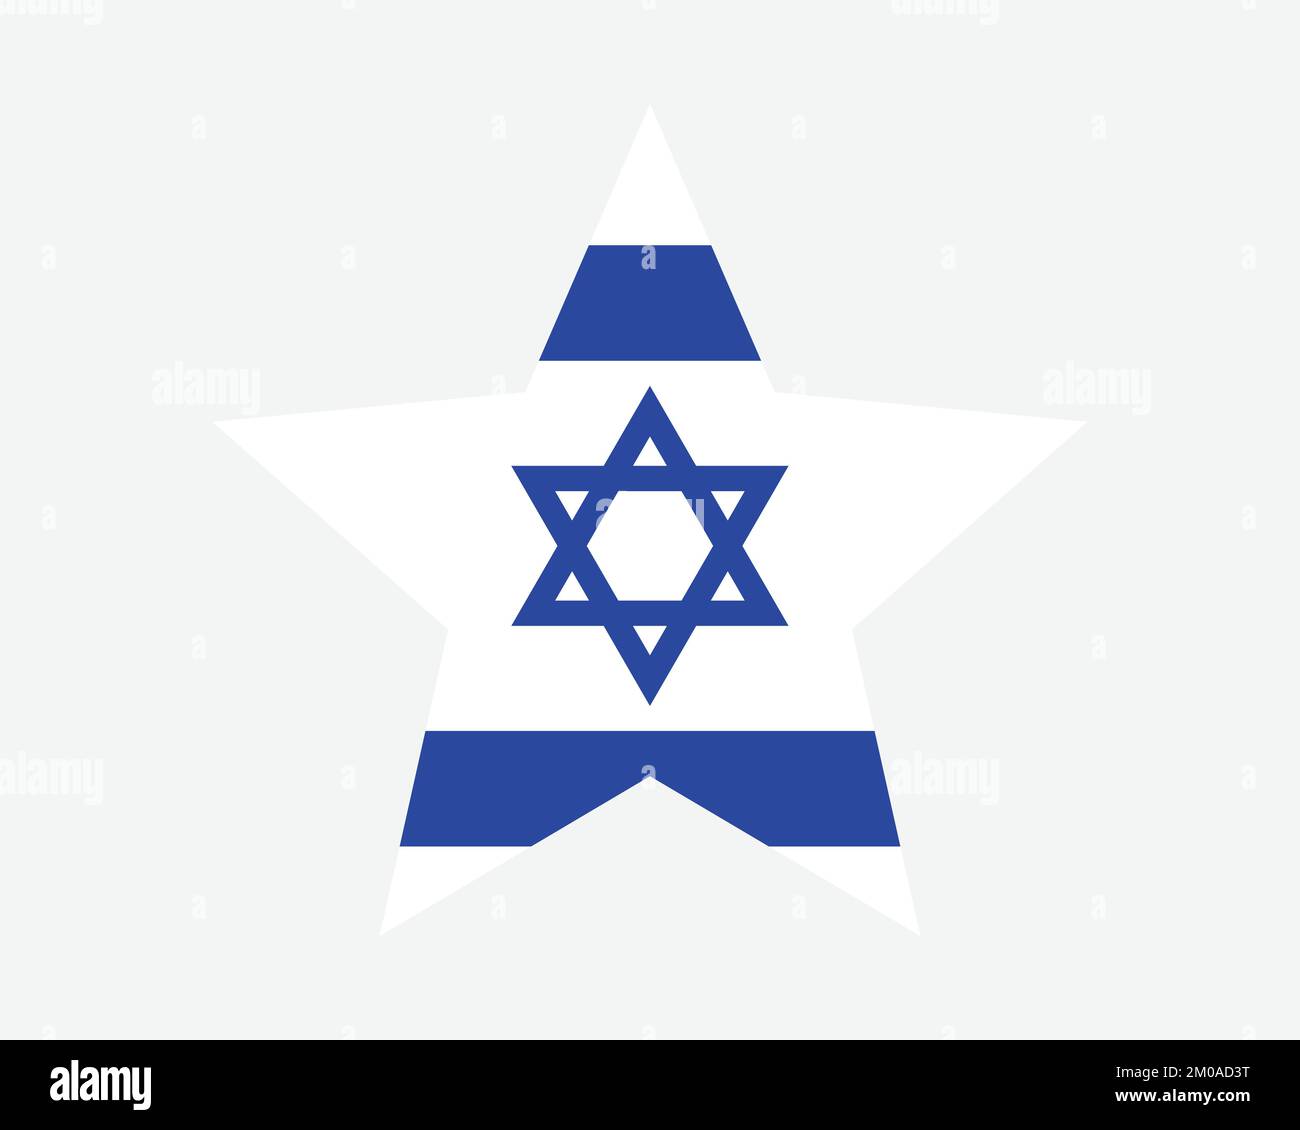 Israelische Sternflagge. Israelische Sternform. Symbol für nationales Banner des US-Bundesstaates Israel Vektor flache Druckvorlagen Grafik Stock Vektor